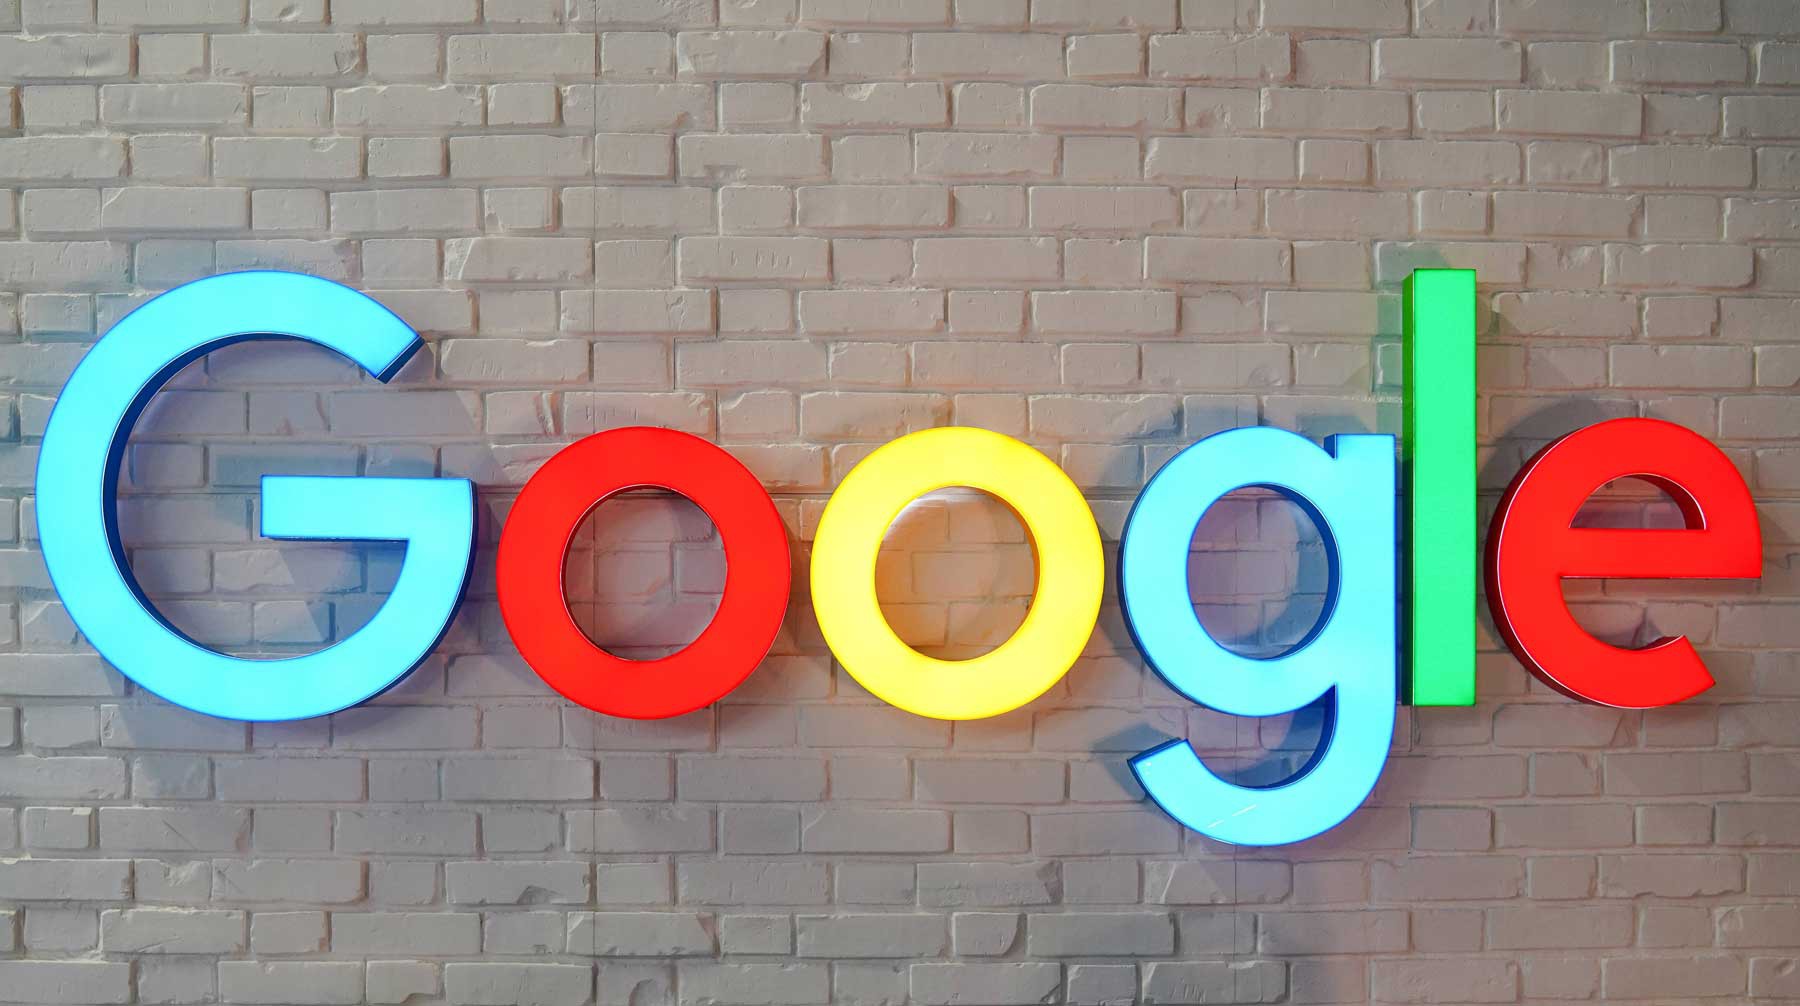 Dailystorm - Google ответил на запрос по поводу русскоязычной брани в своей рекламе